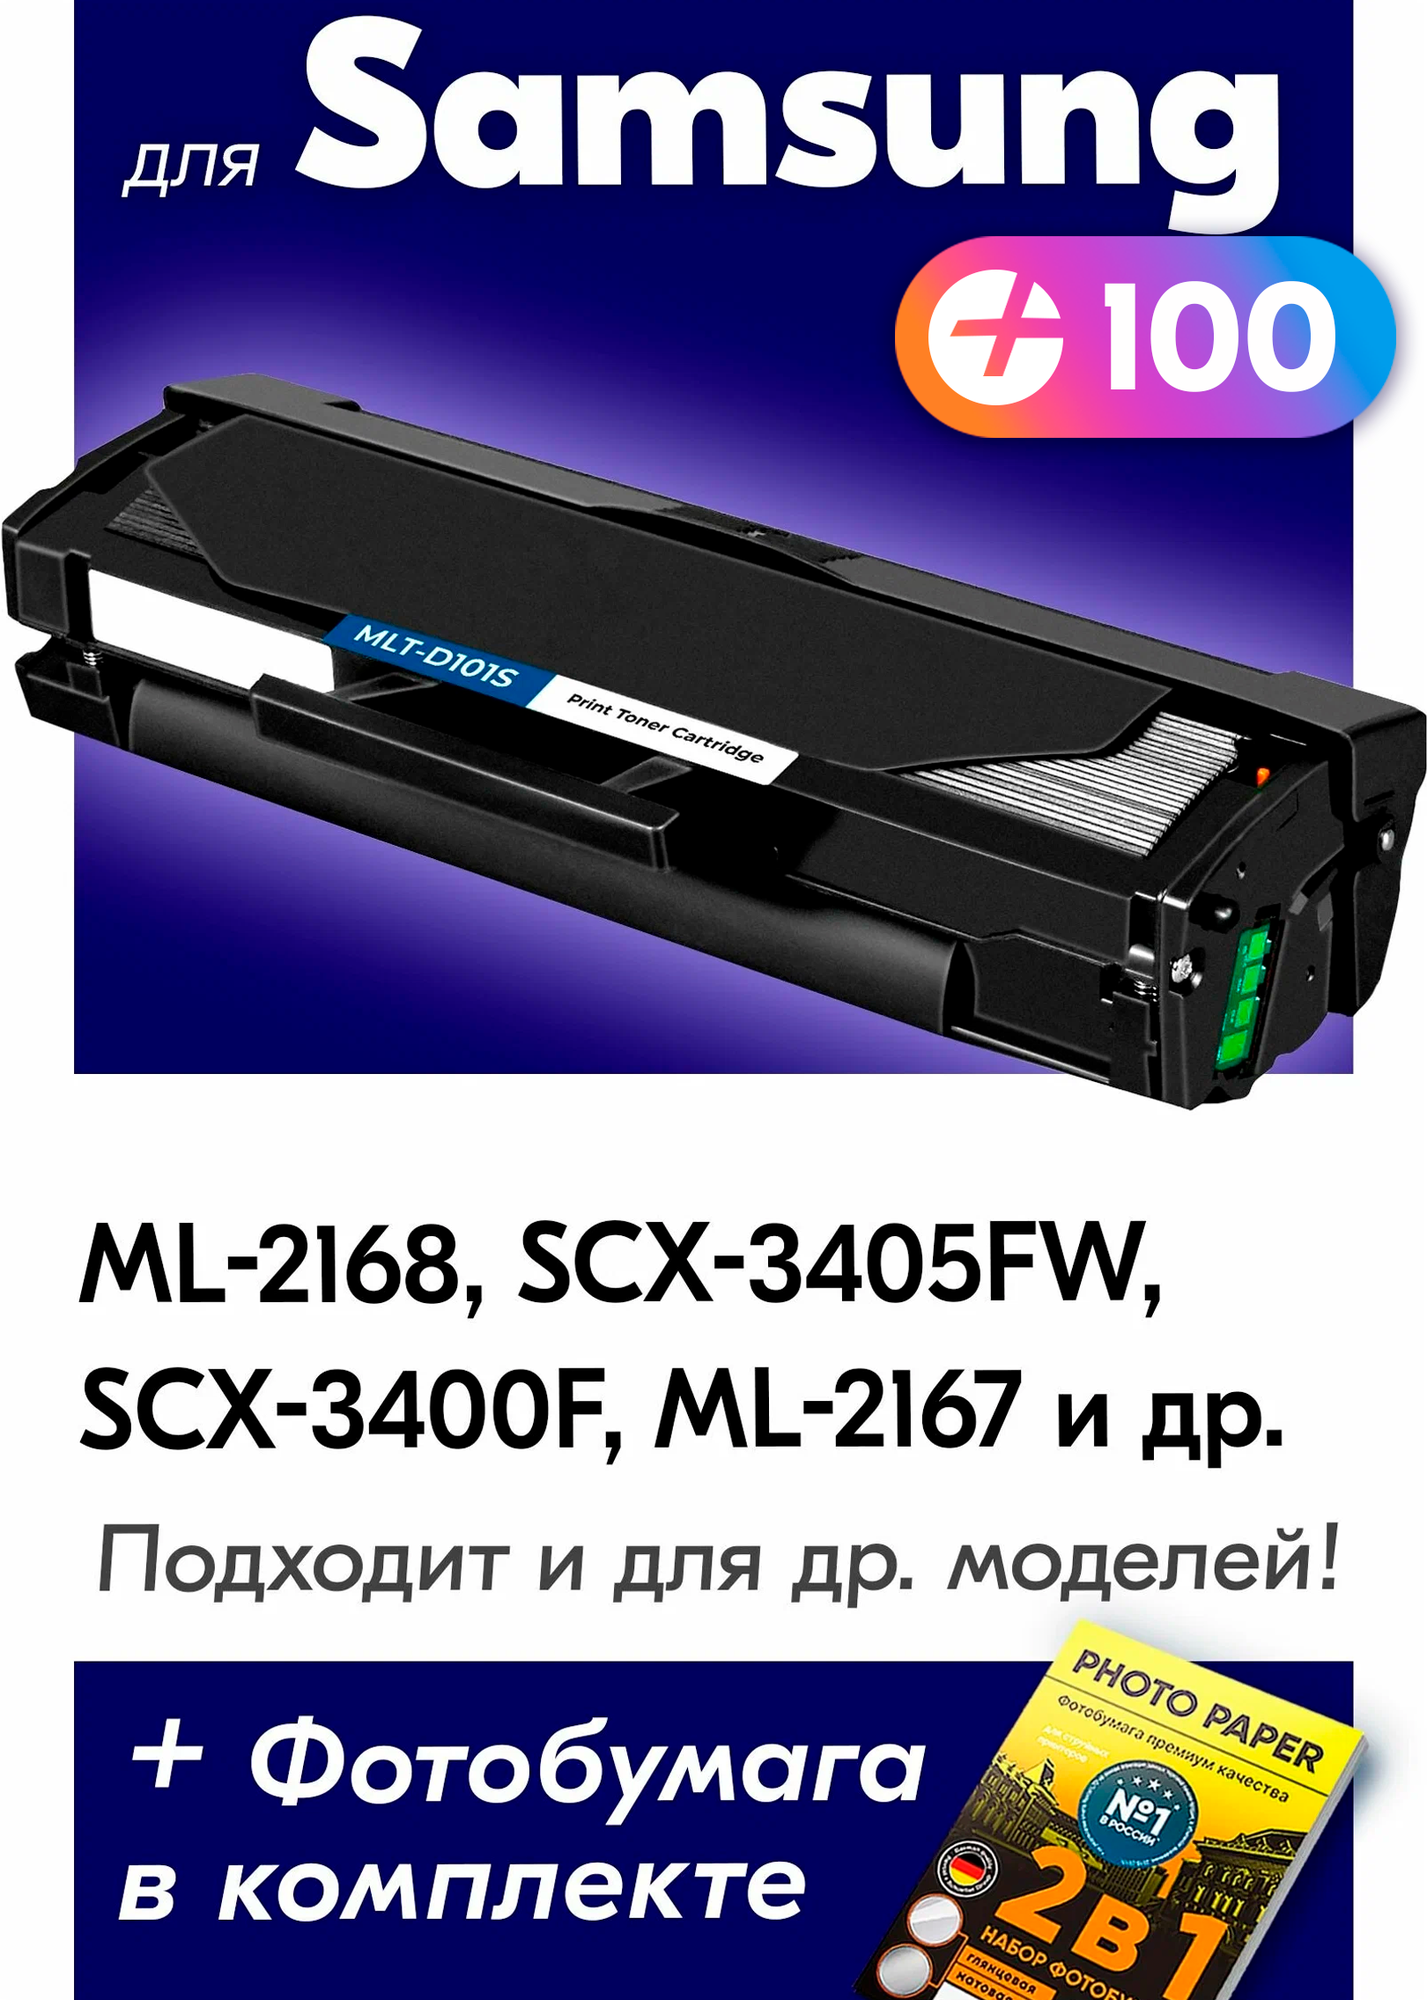 Лазерный картридж для Samsung MLT-D101S, Samsung ML-2168, SCX-3405FW, SCX-3400F, ML-2167 с краской (тонером) черный новый заправляемый, 1500 копий